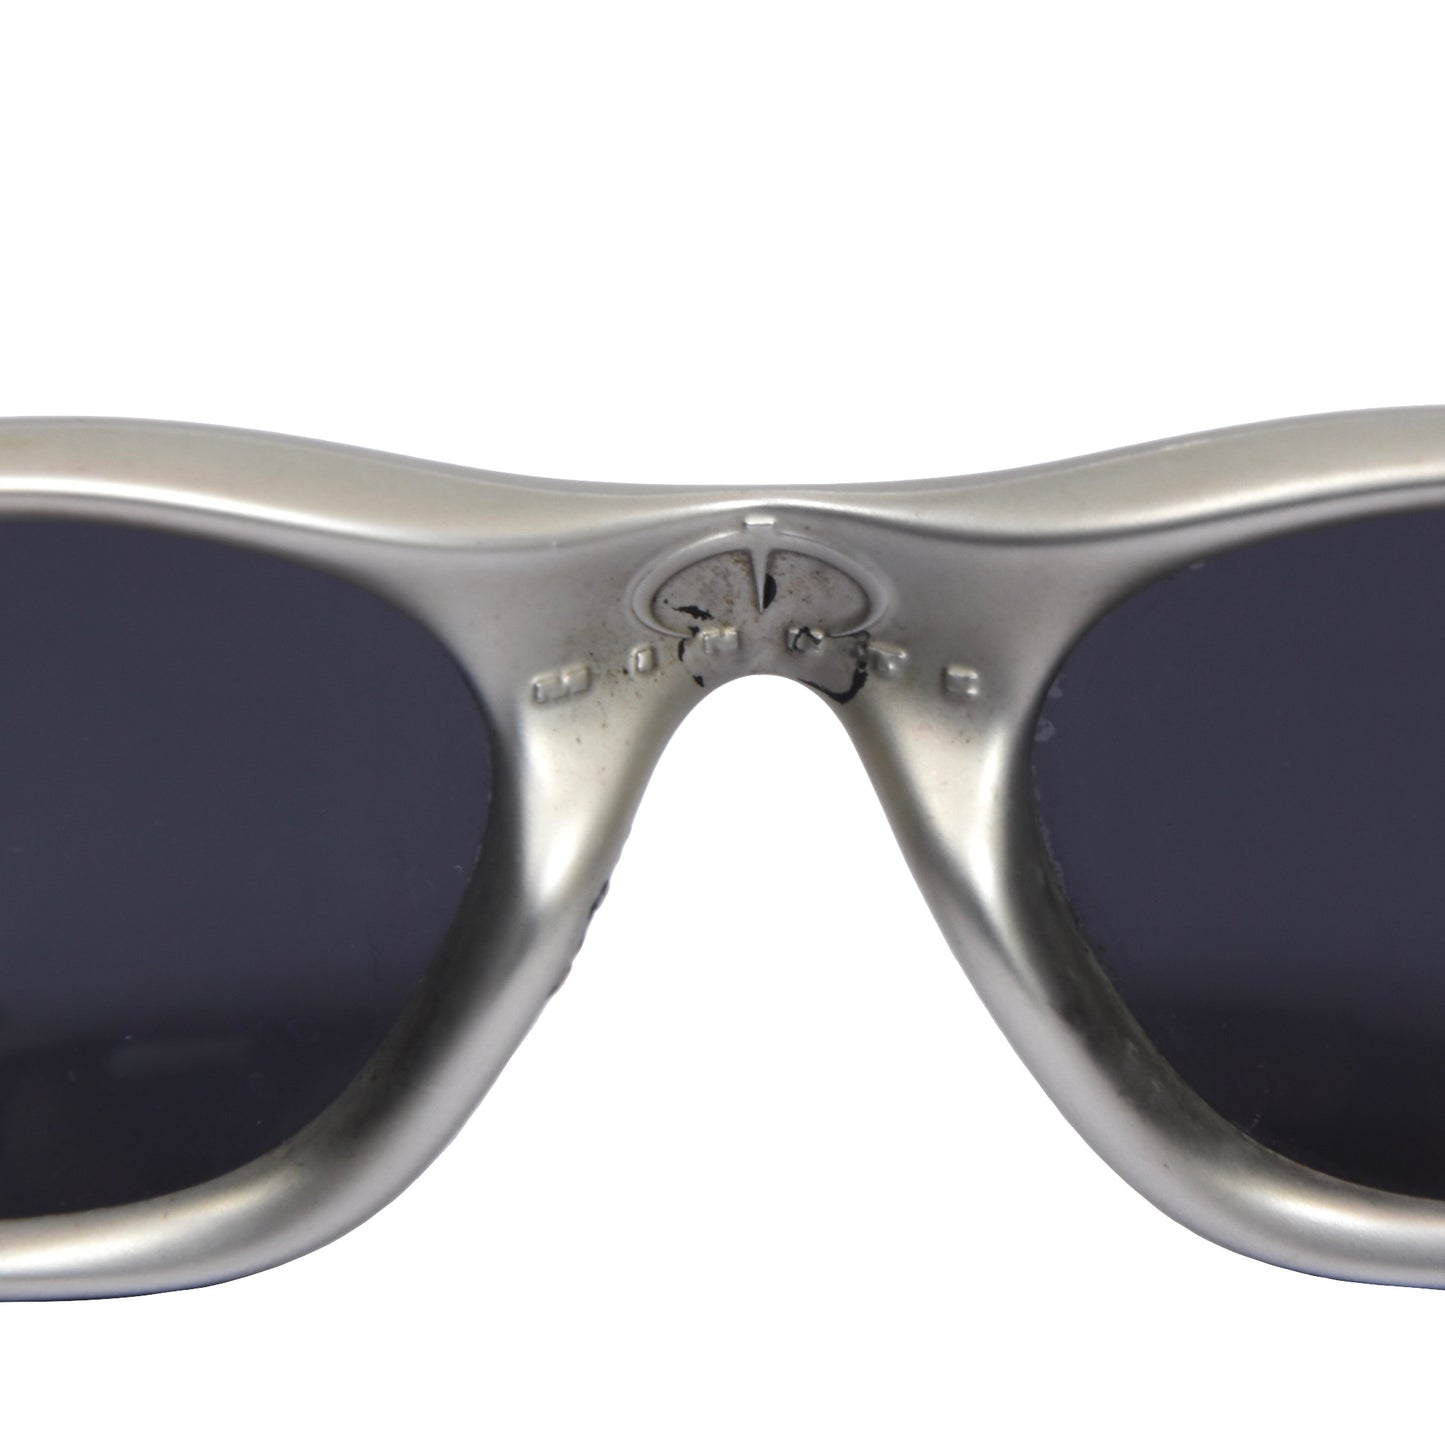 Oakley Minute Sunglasses - Silver